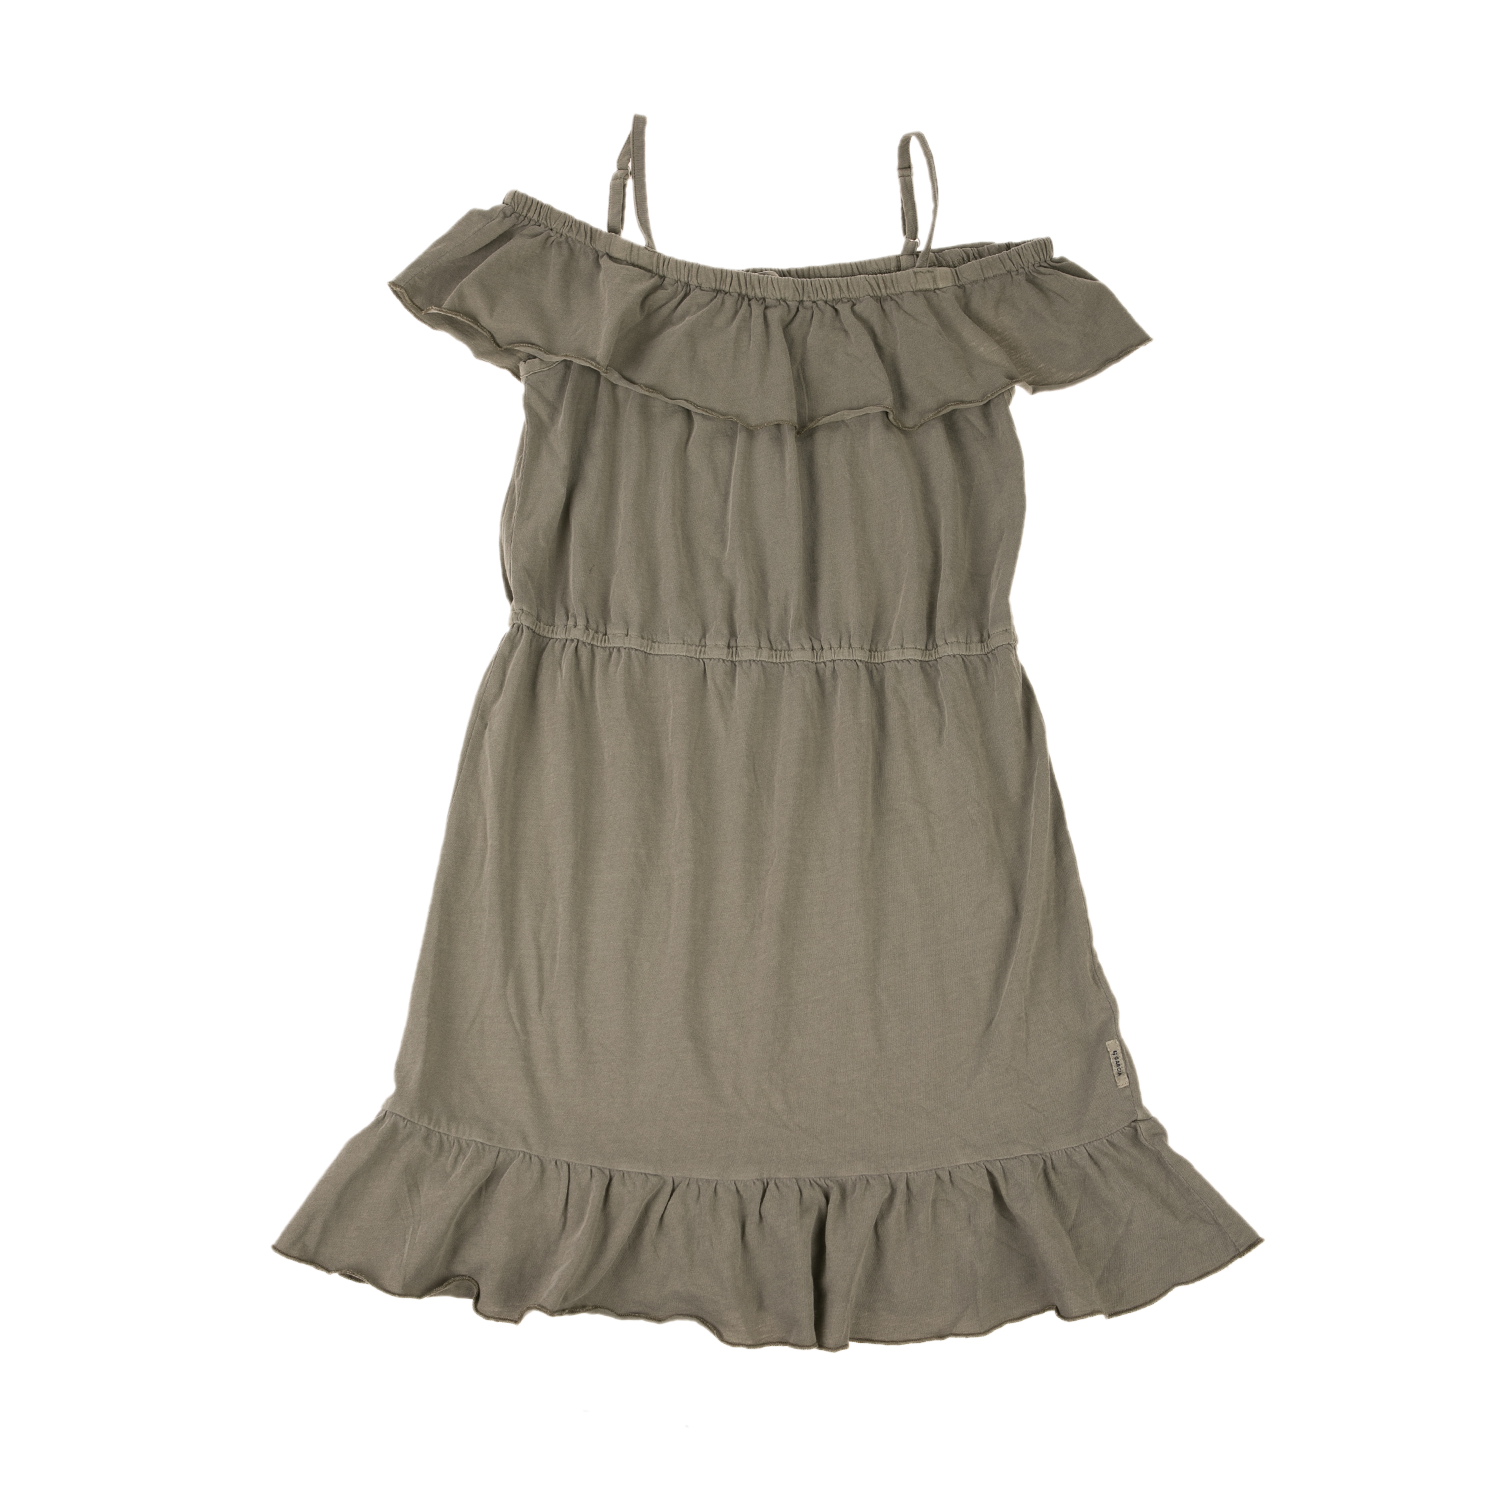 Παιδικά/Girls/Ρούχα/Φορέματα Κοντομάνικα-Αμάνικα GARCIA JEANS - Παιδικό φόρεμα GARCIA JEANS